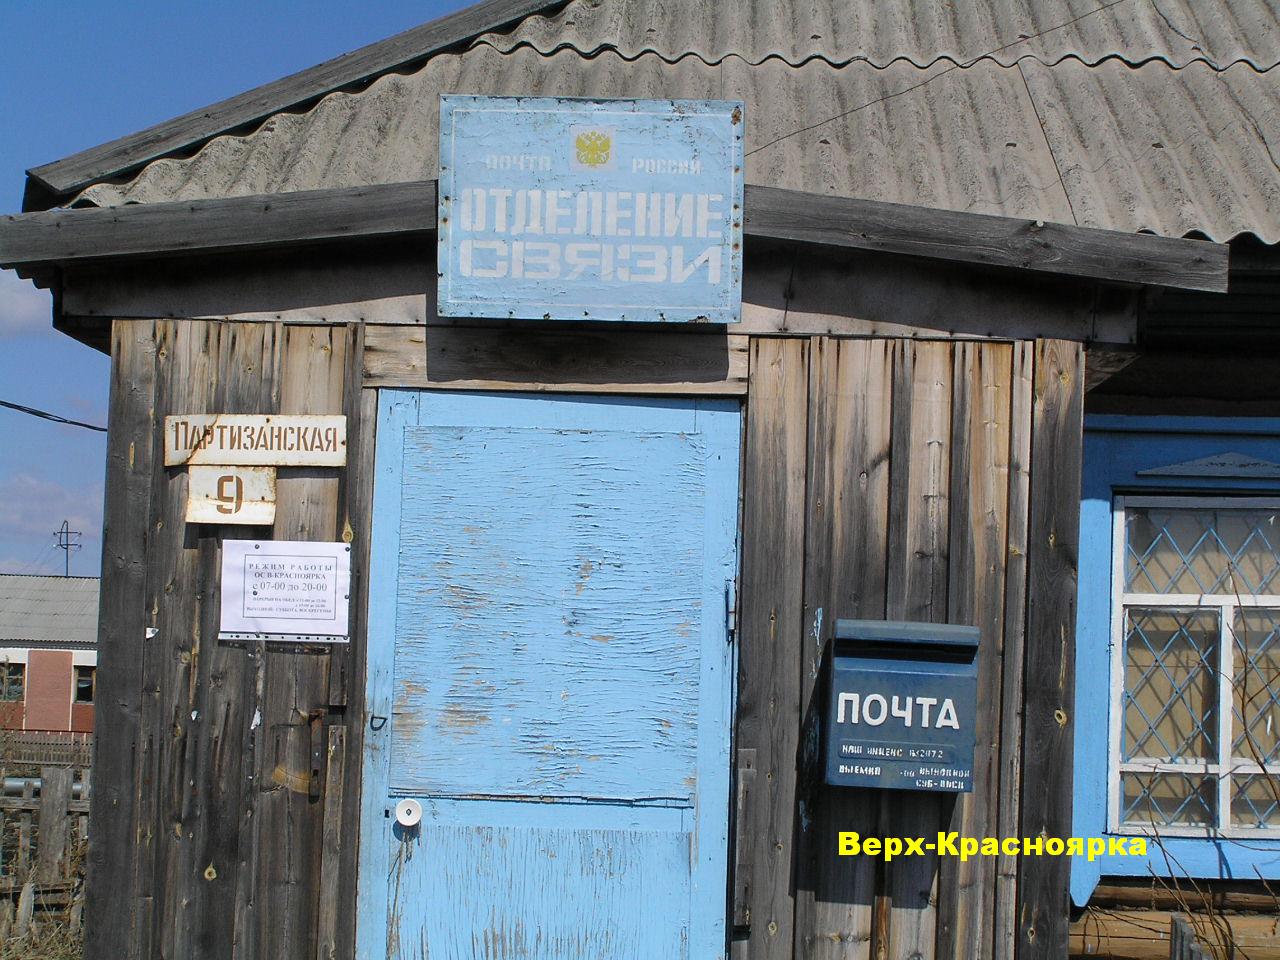 ВХОД, отделение почтовой связи 632072, Новосибирская обл., Северный р-он, Верх-Красноярка